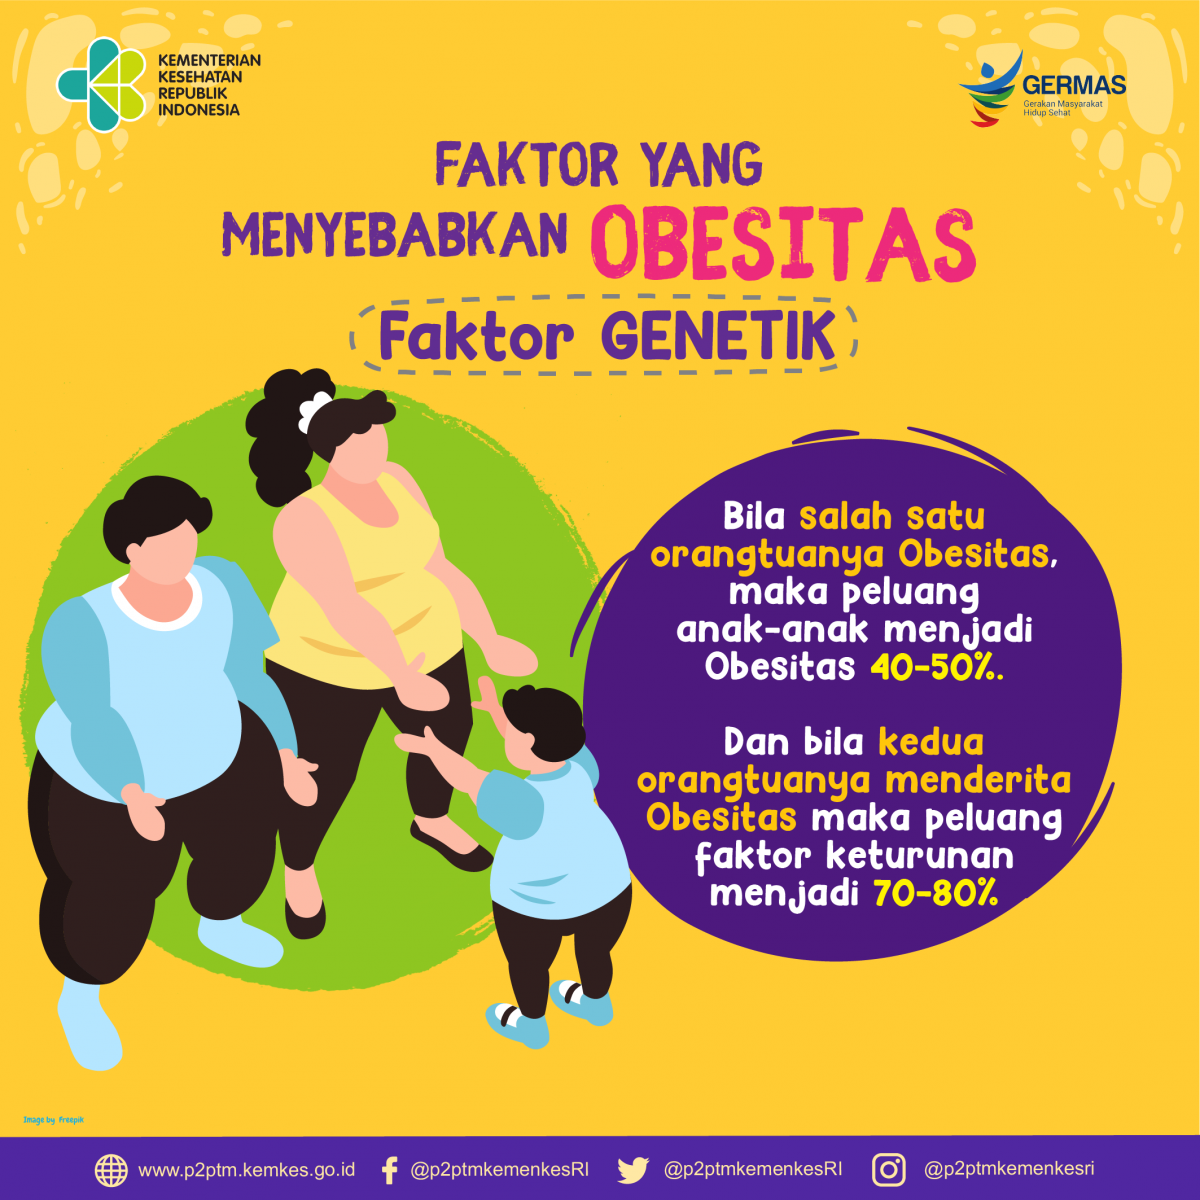 Faktor genetik merupakan salah satu penyebab Obesitas